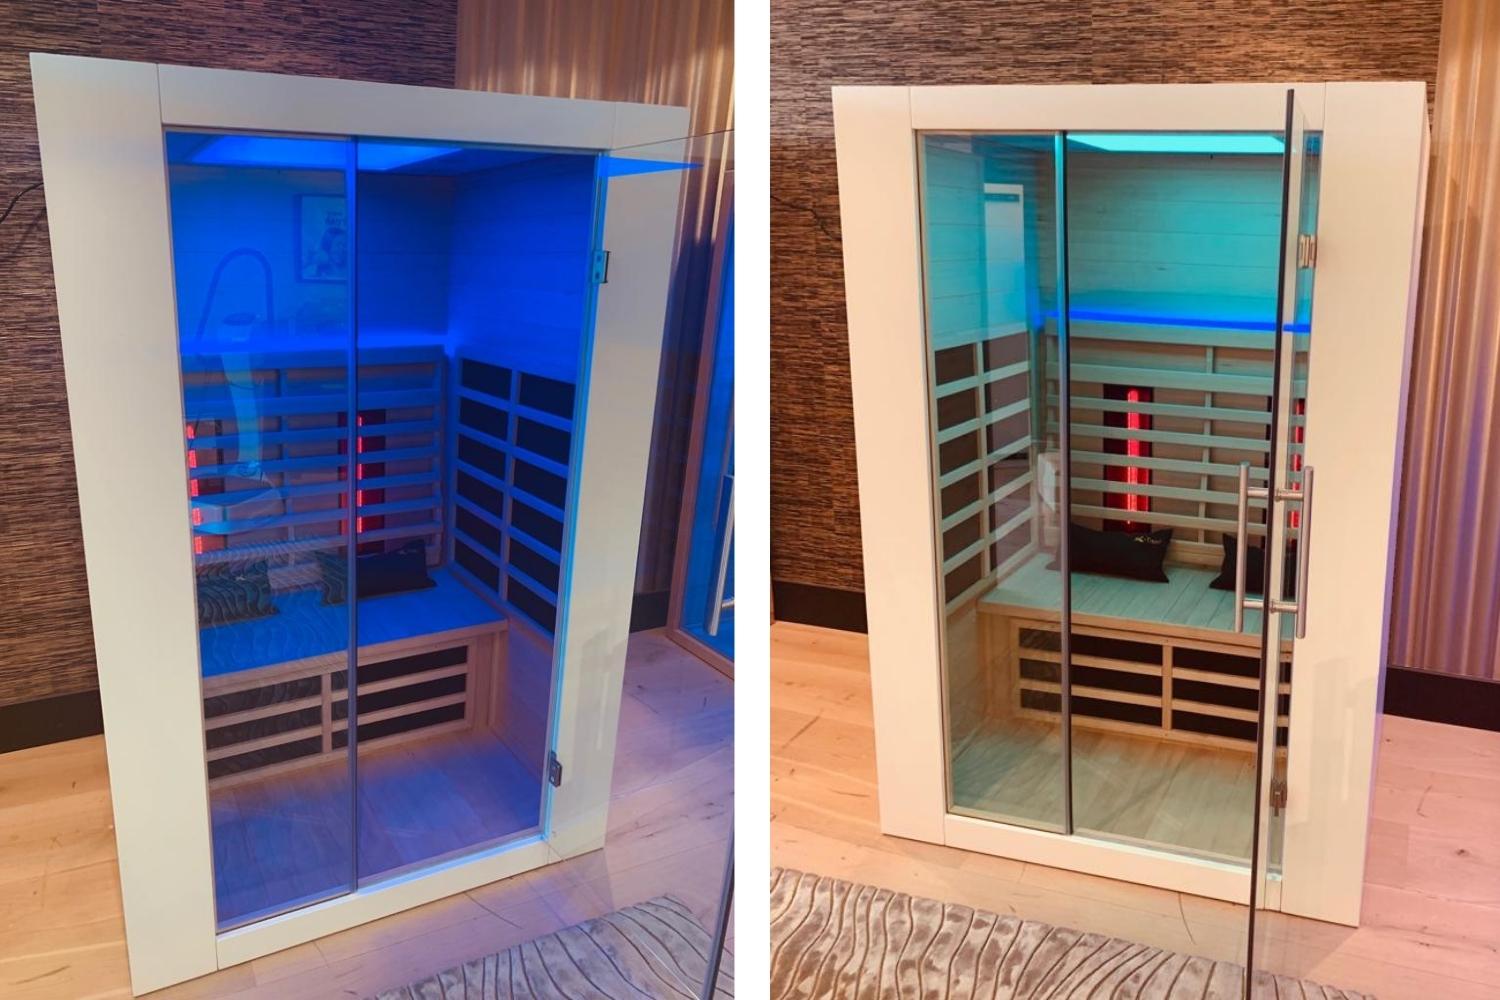 Afvallen met infrarood sauna